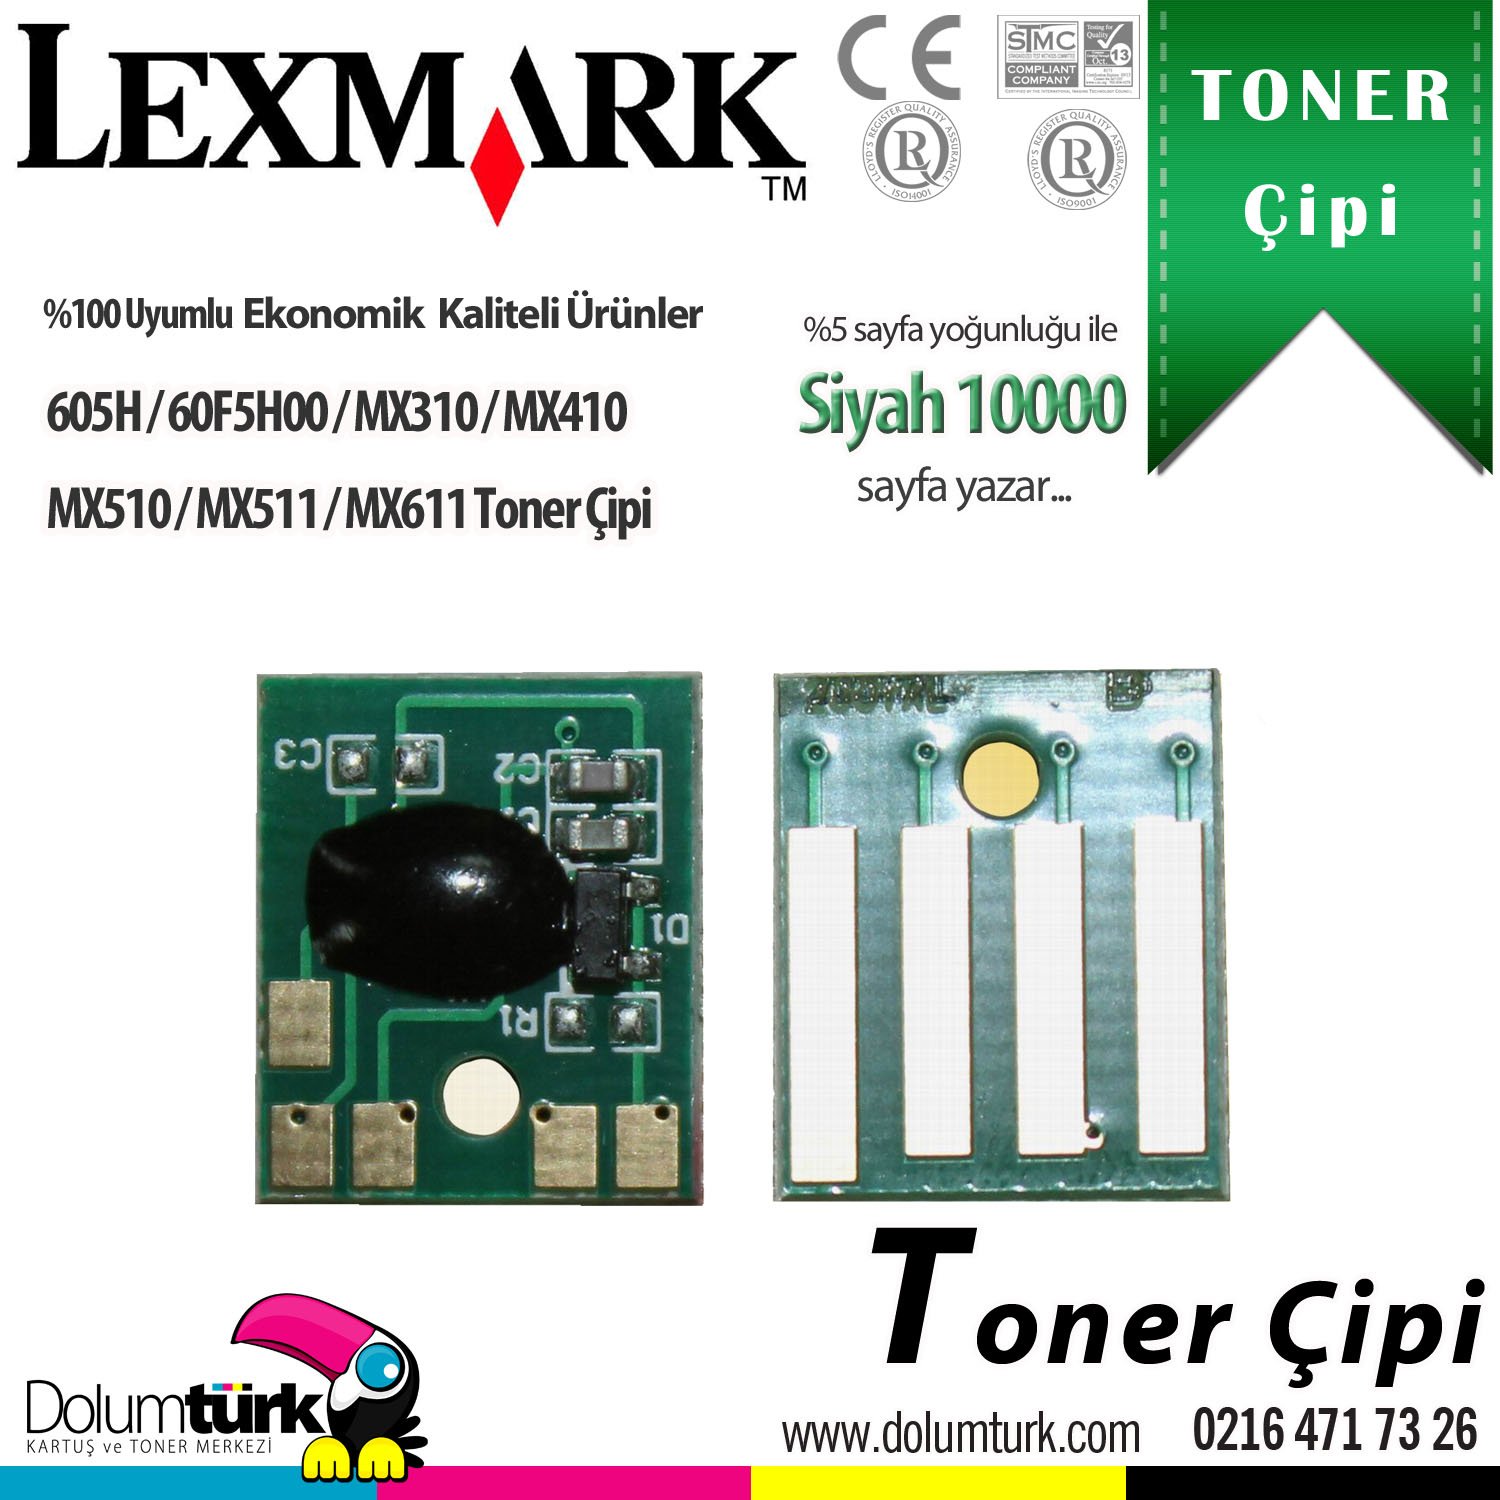 Lexmark 605H / 60F5H00 / MX310 / MX410 / MX510 / MX511 / MX611 Toner Çipi